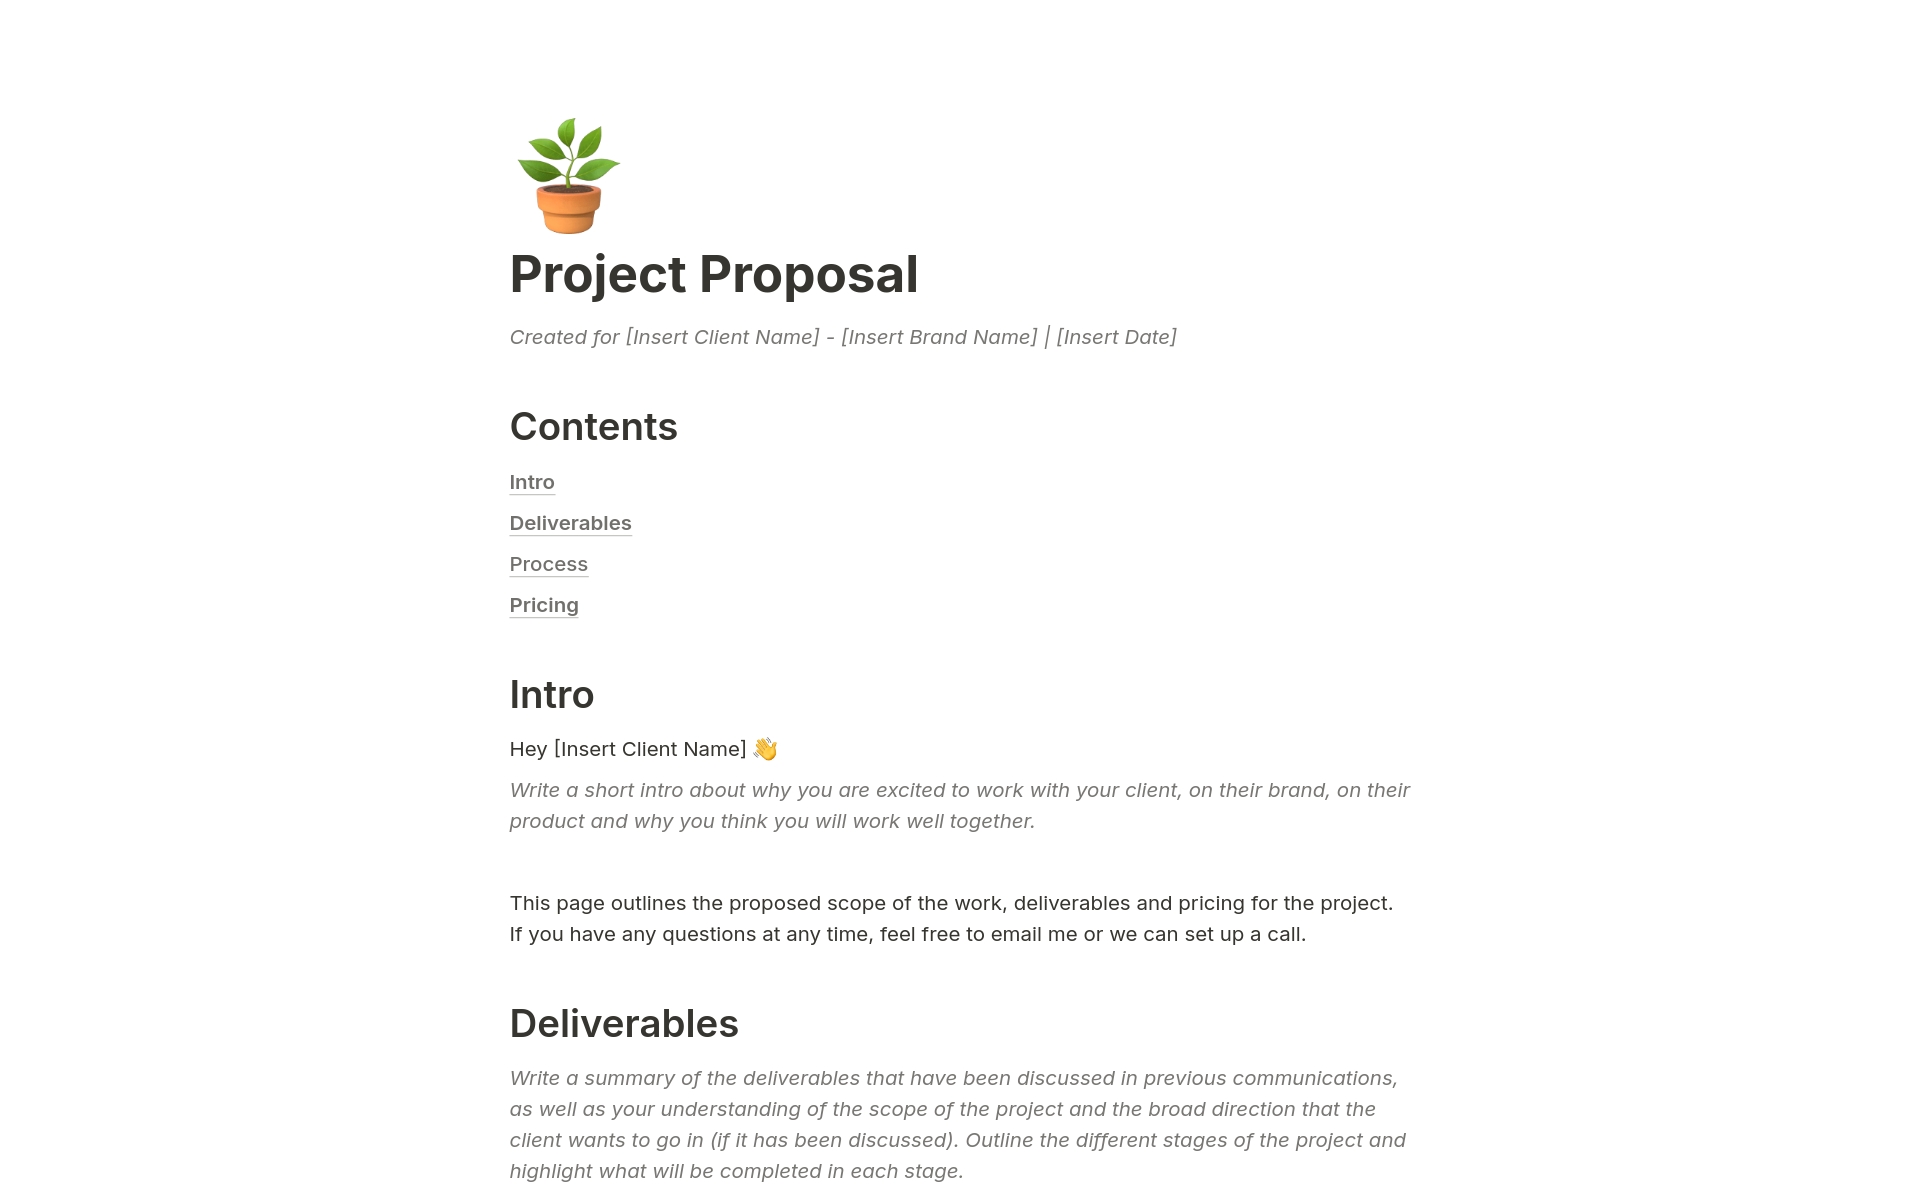 Aperçu du modèle de Design Project Proposal